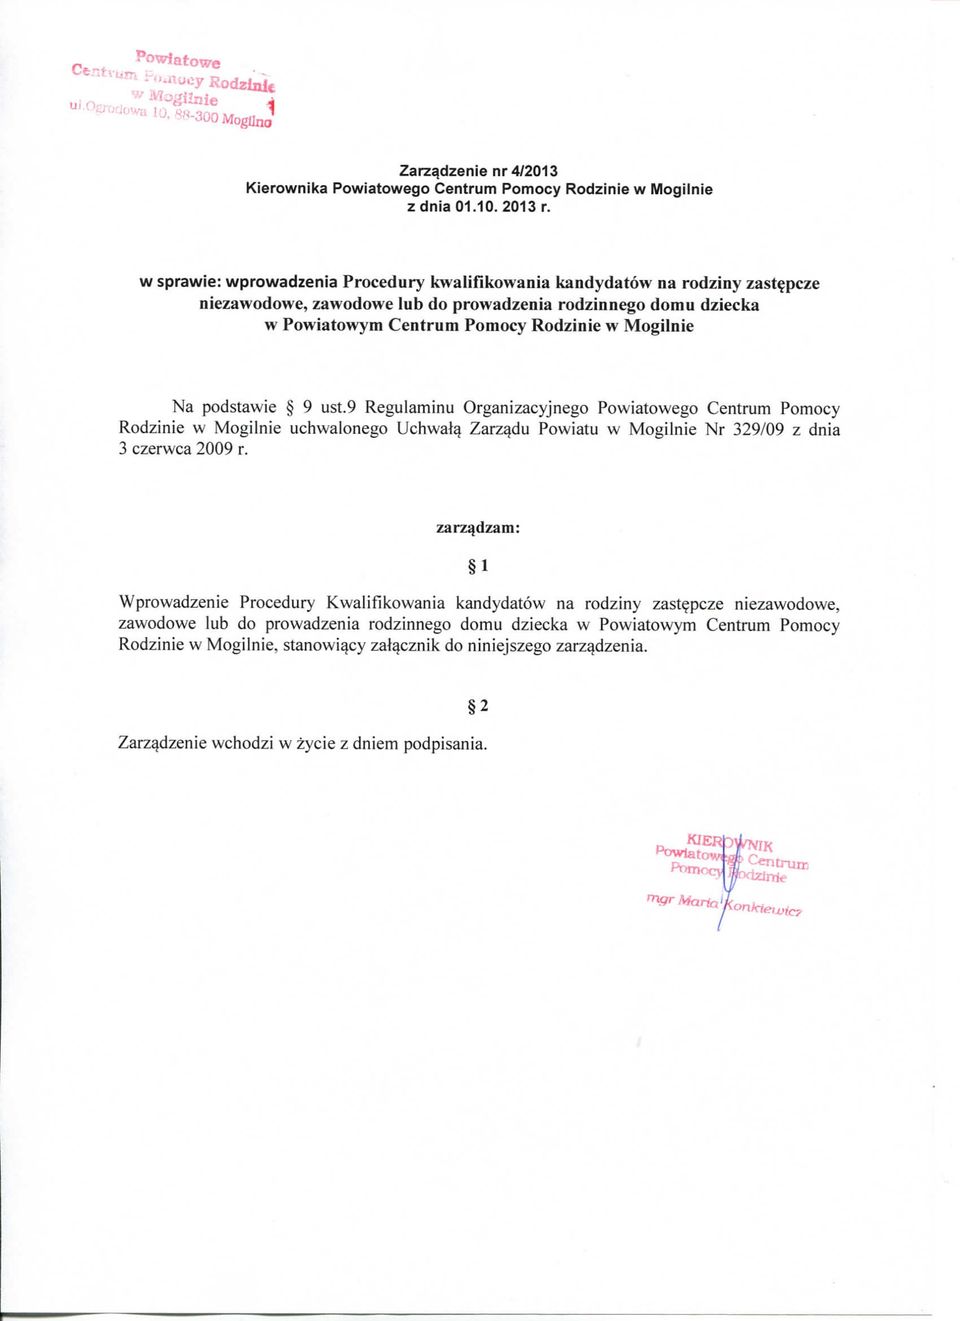 Na podstawie 9 ust.9 Regulaminu Organizacyjnego Powiatowego Centrum Pomocy Rodzinie w Mogilnie uchwalonego Uchwalq Zarzqdu Powiatu w Mogilnie Nr 329/09 z dnia 3 czerwca 2009 r.